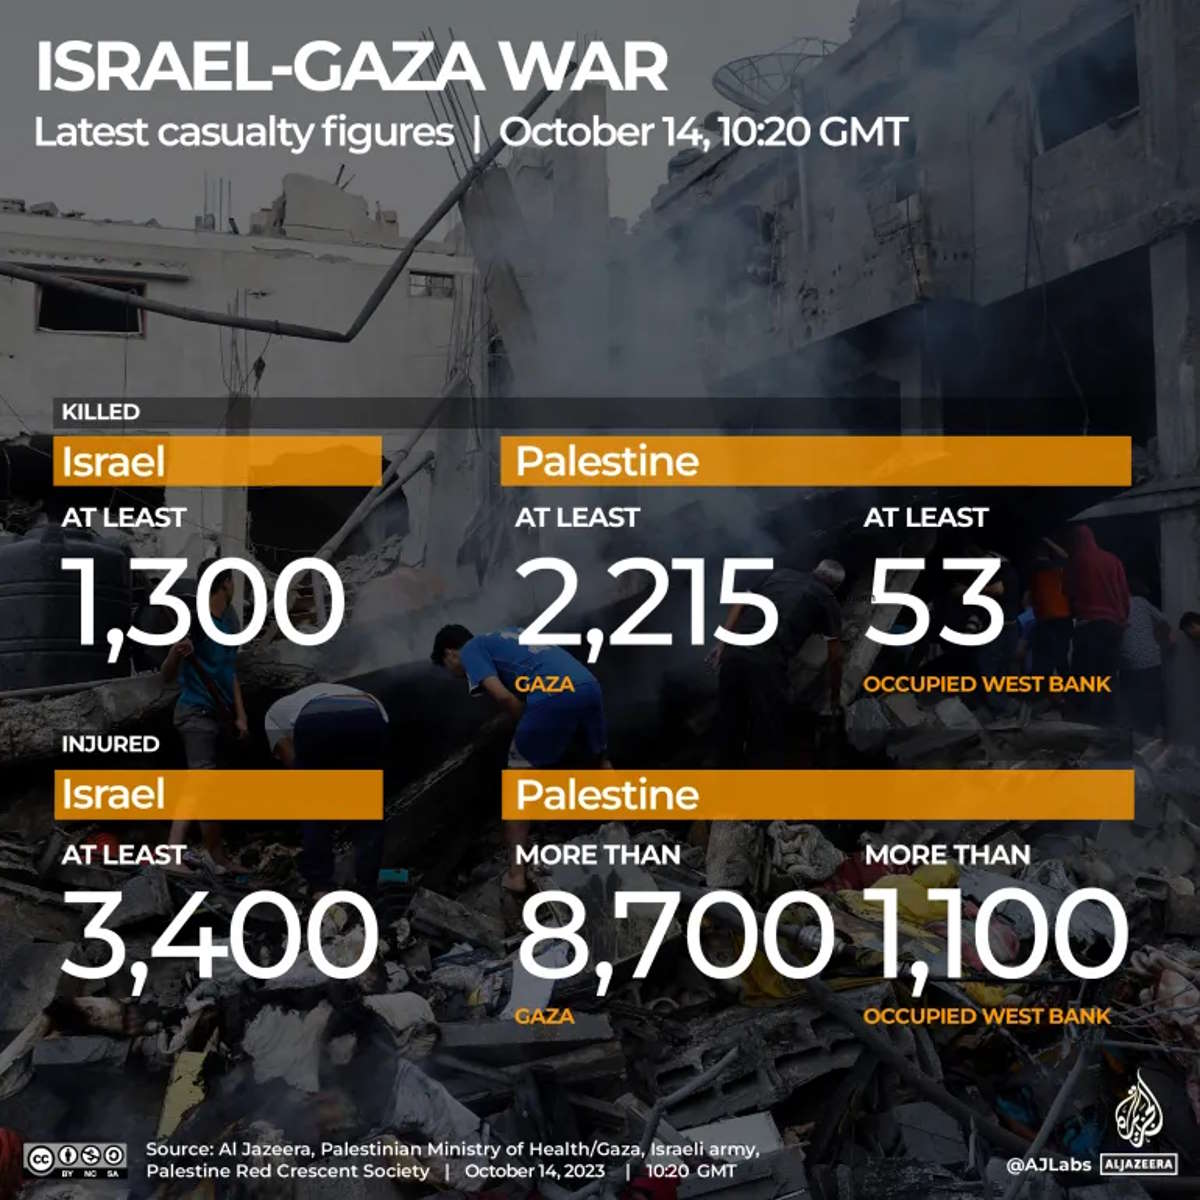 12 ong hanno lanciato un appello per evitare a Gaza una carneficina senza precedenti nel caso dell'incursione israeliana di terra